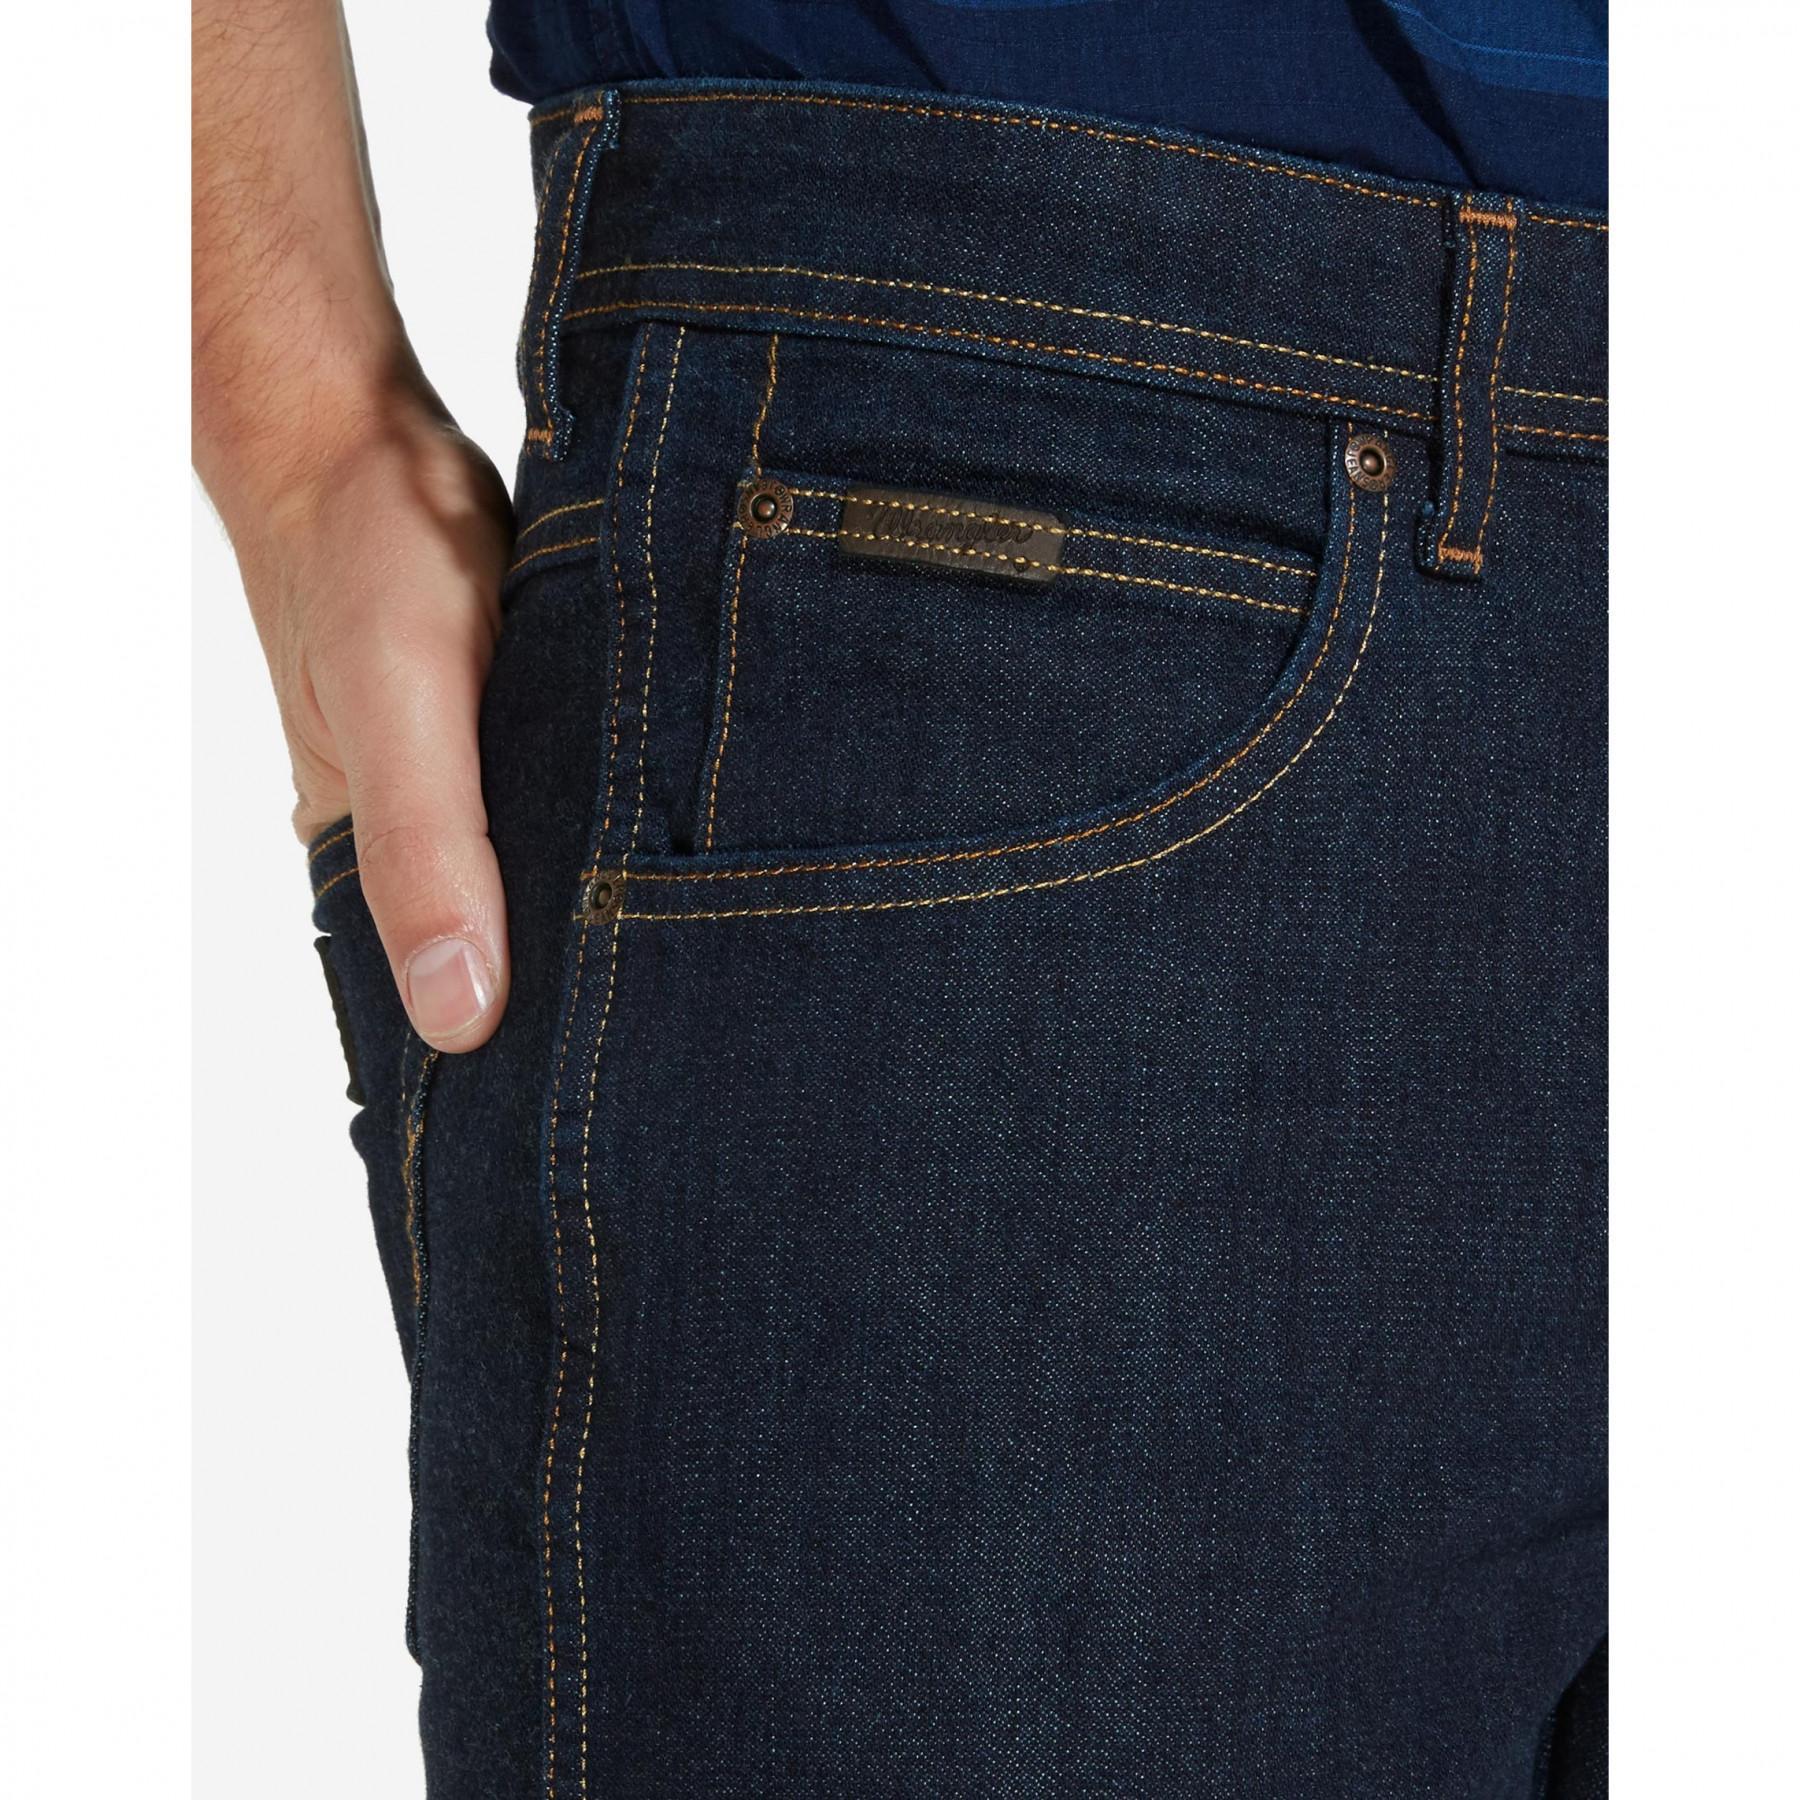 Jeans Wrangler arizona stretch raw